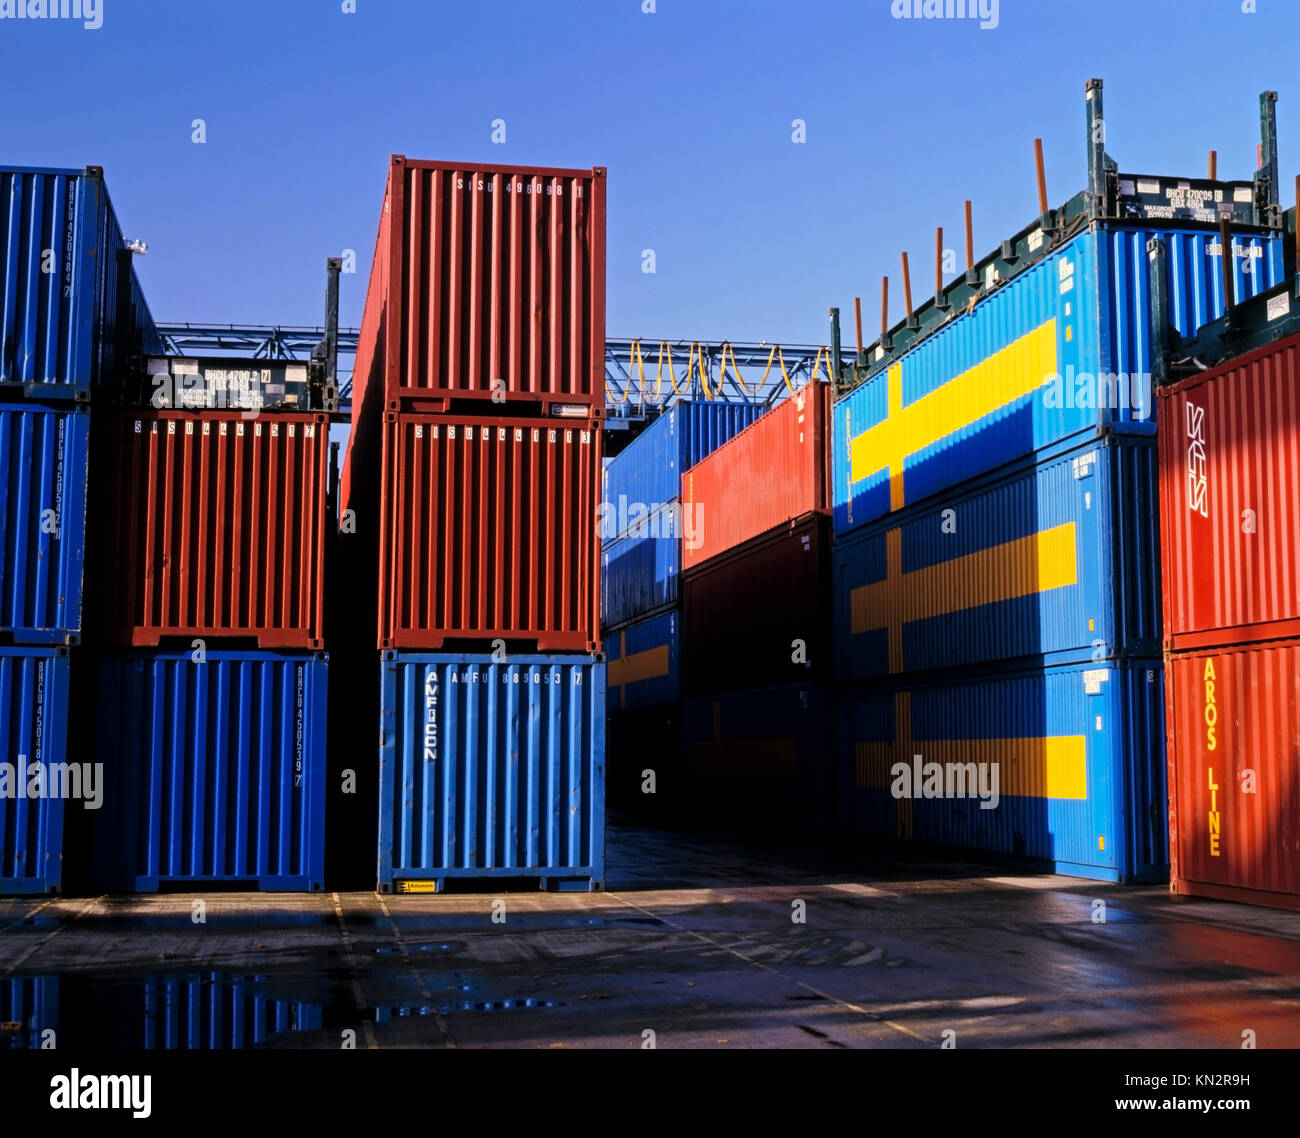 Contenedores suecos apilados en una terminal de contenedores y muelles, Suecia importaciones y exportaciones. Foto de stock